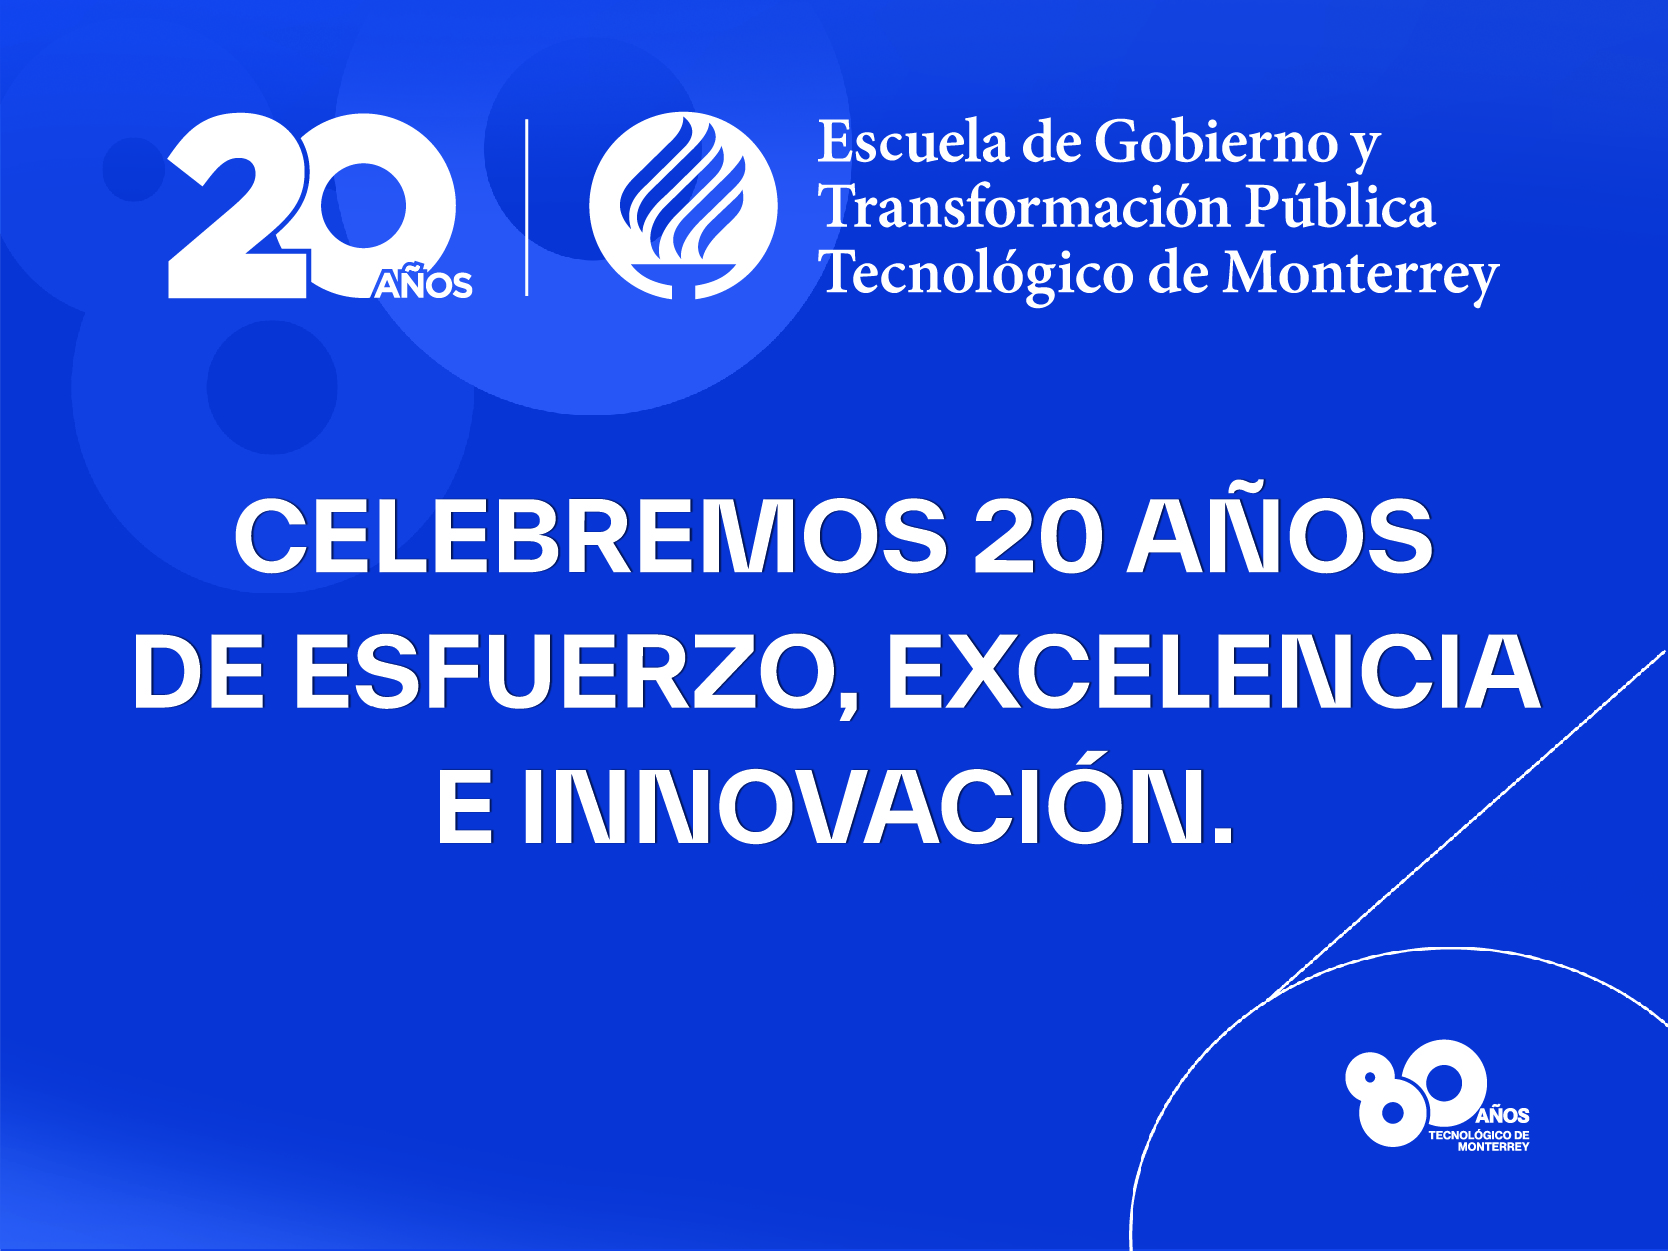 20 aniversario de la Escuela de Gobierno y Transformación Pública